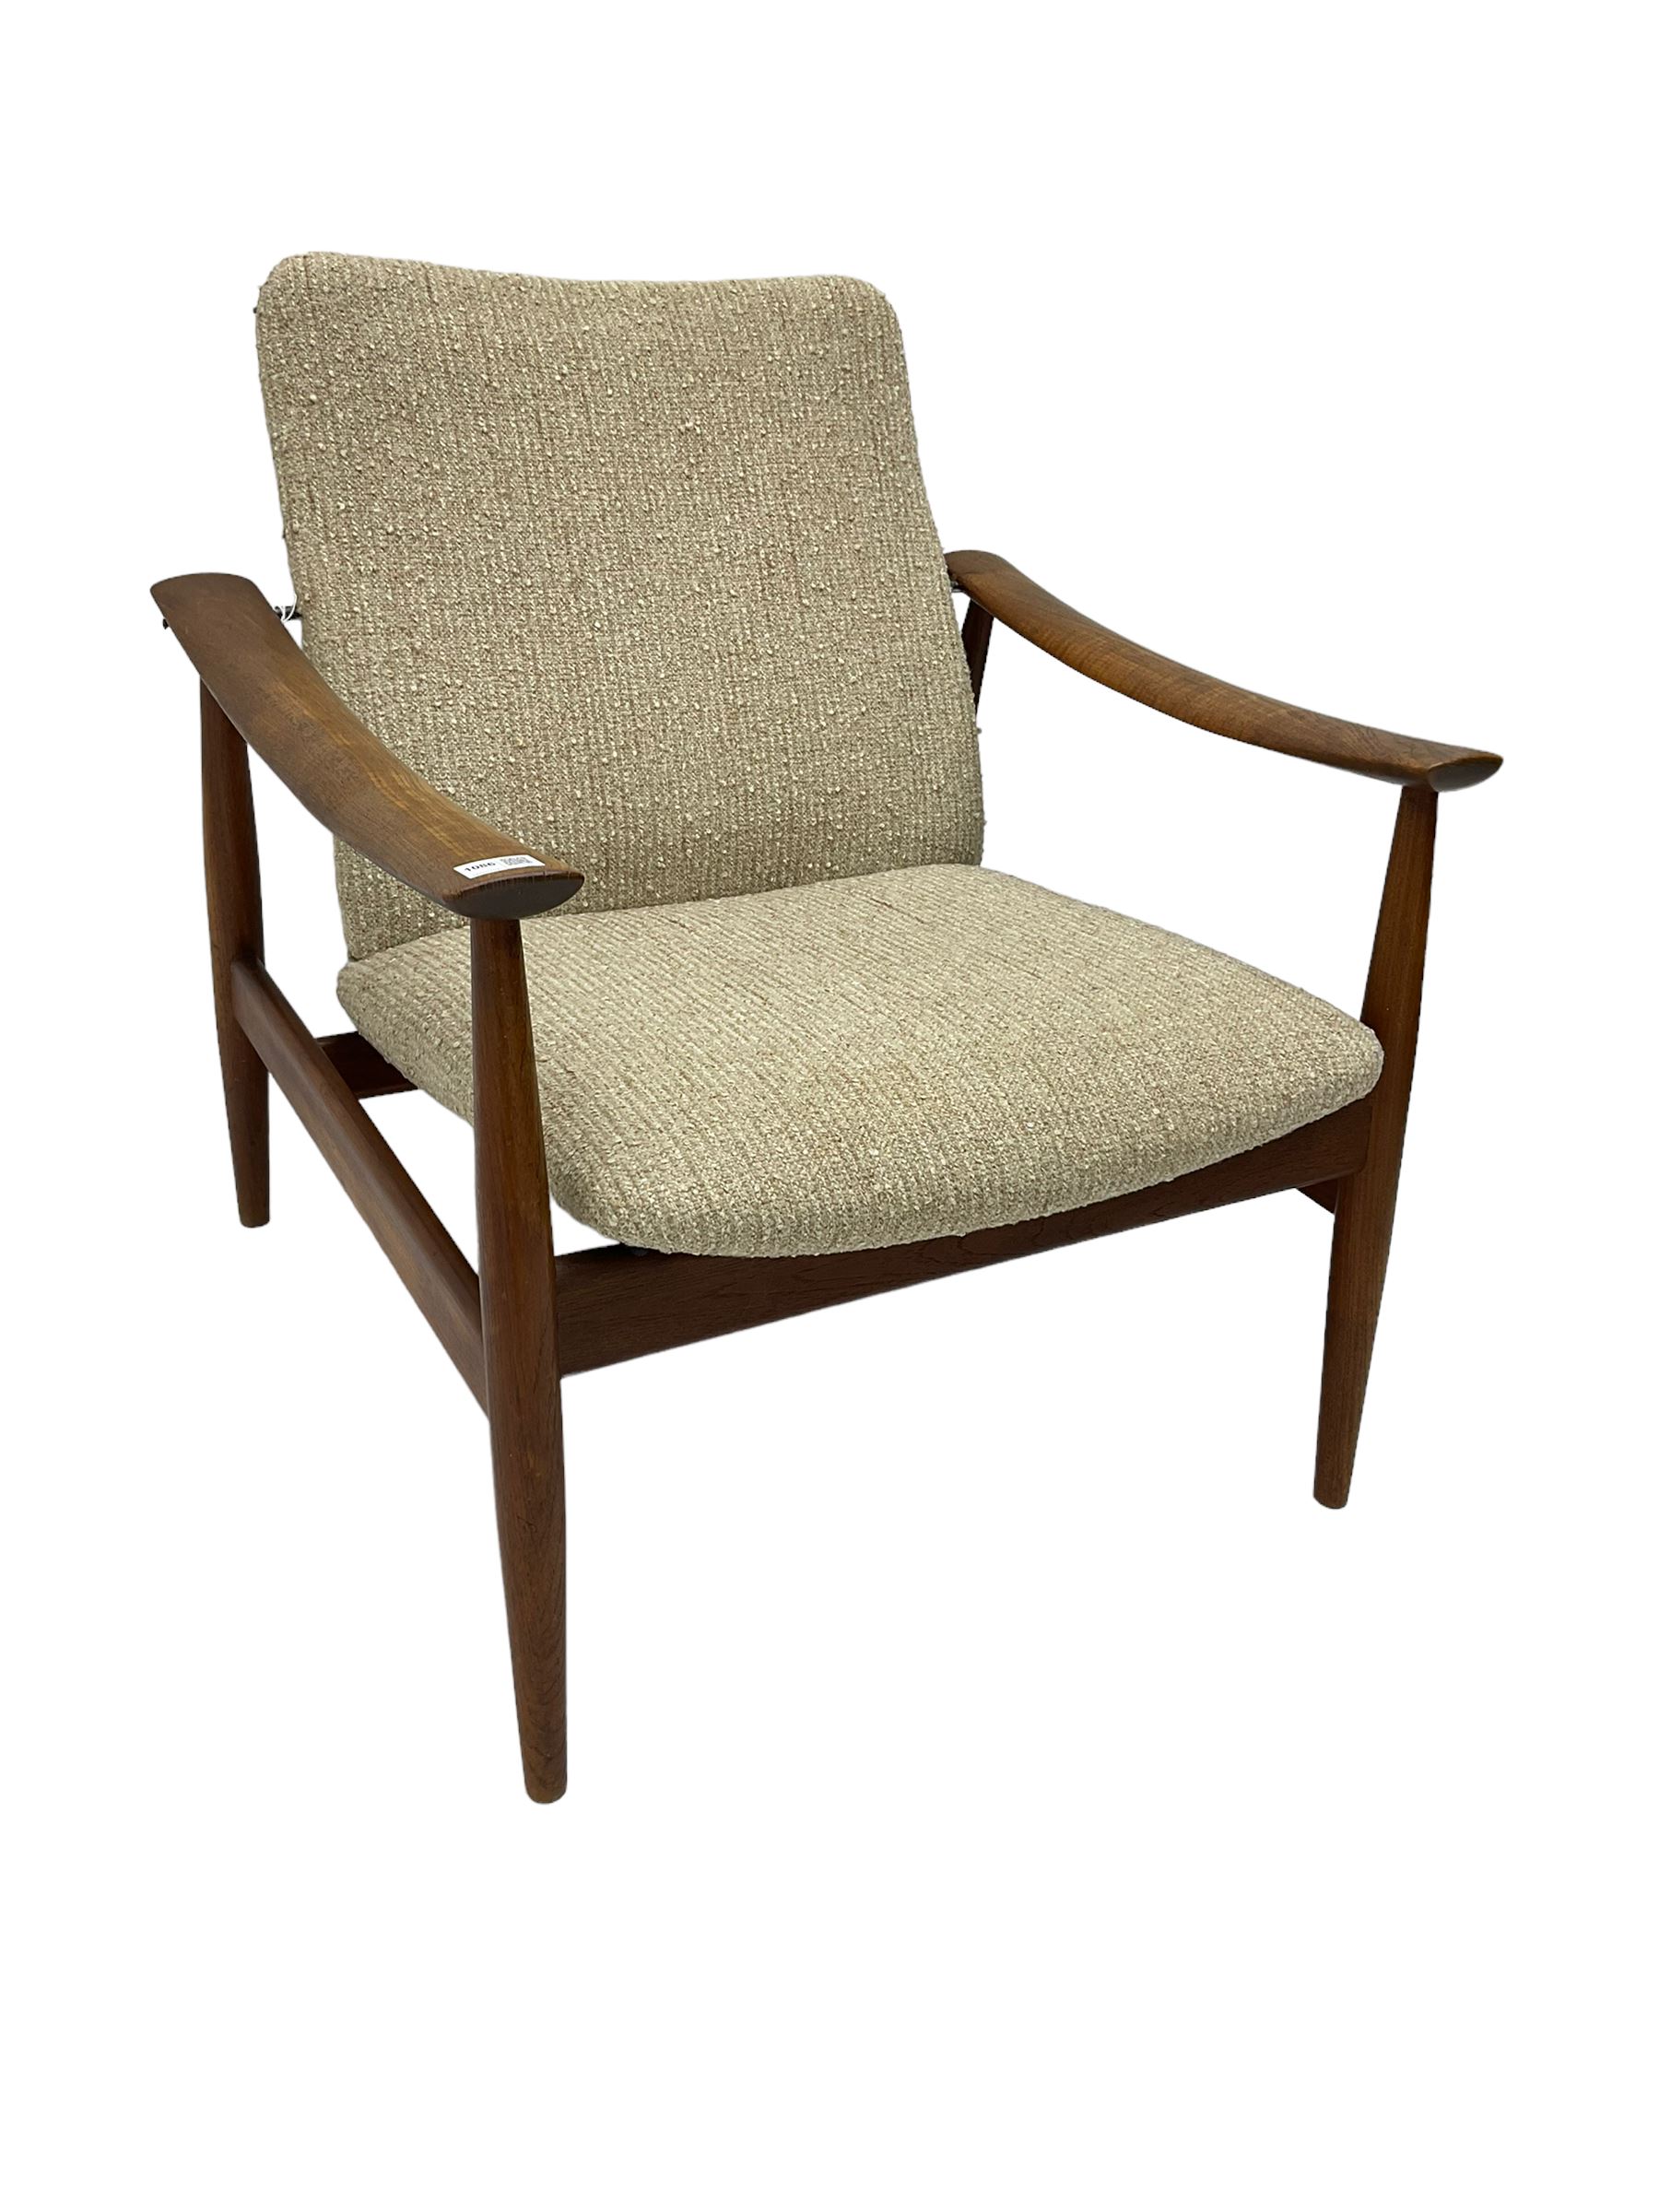 Finn Juhl for France & Son - 'model 138' mid-20th century teak easy chair upholstered in beige fabri - Image 5 of 14